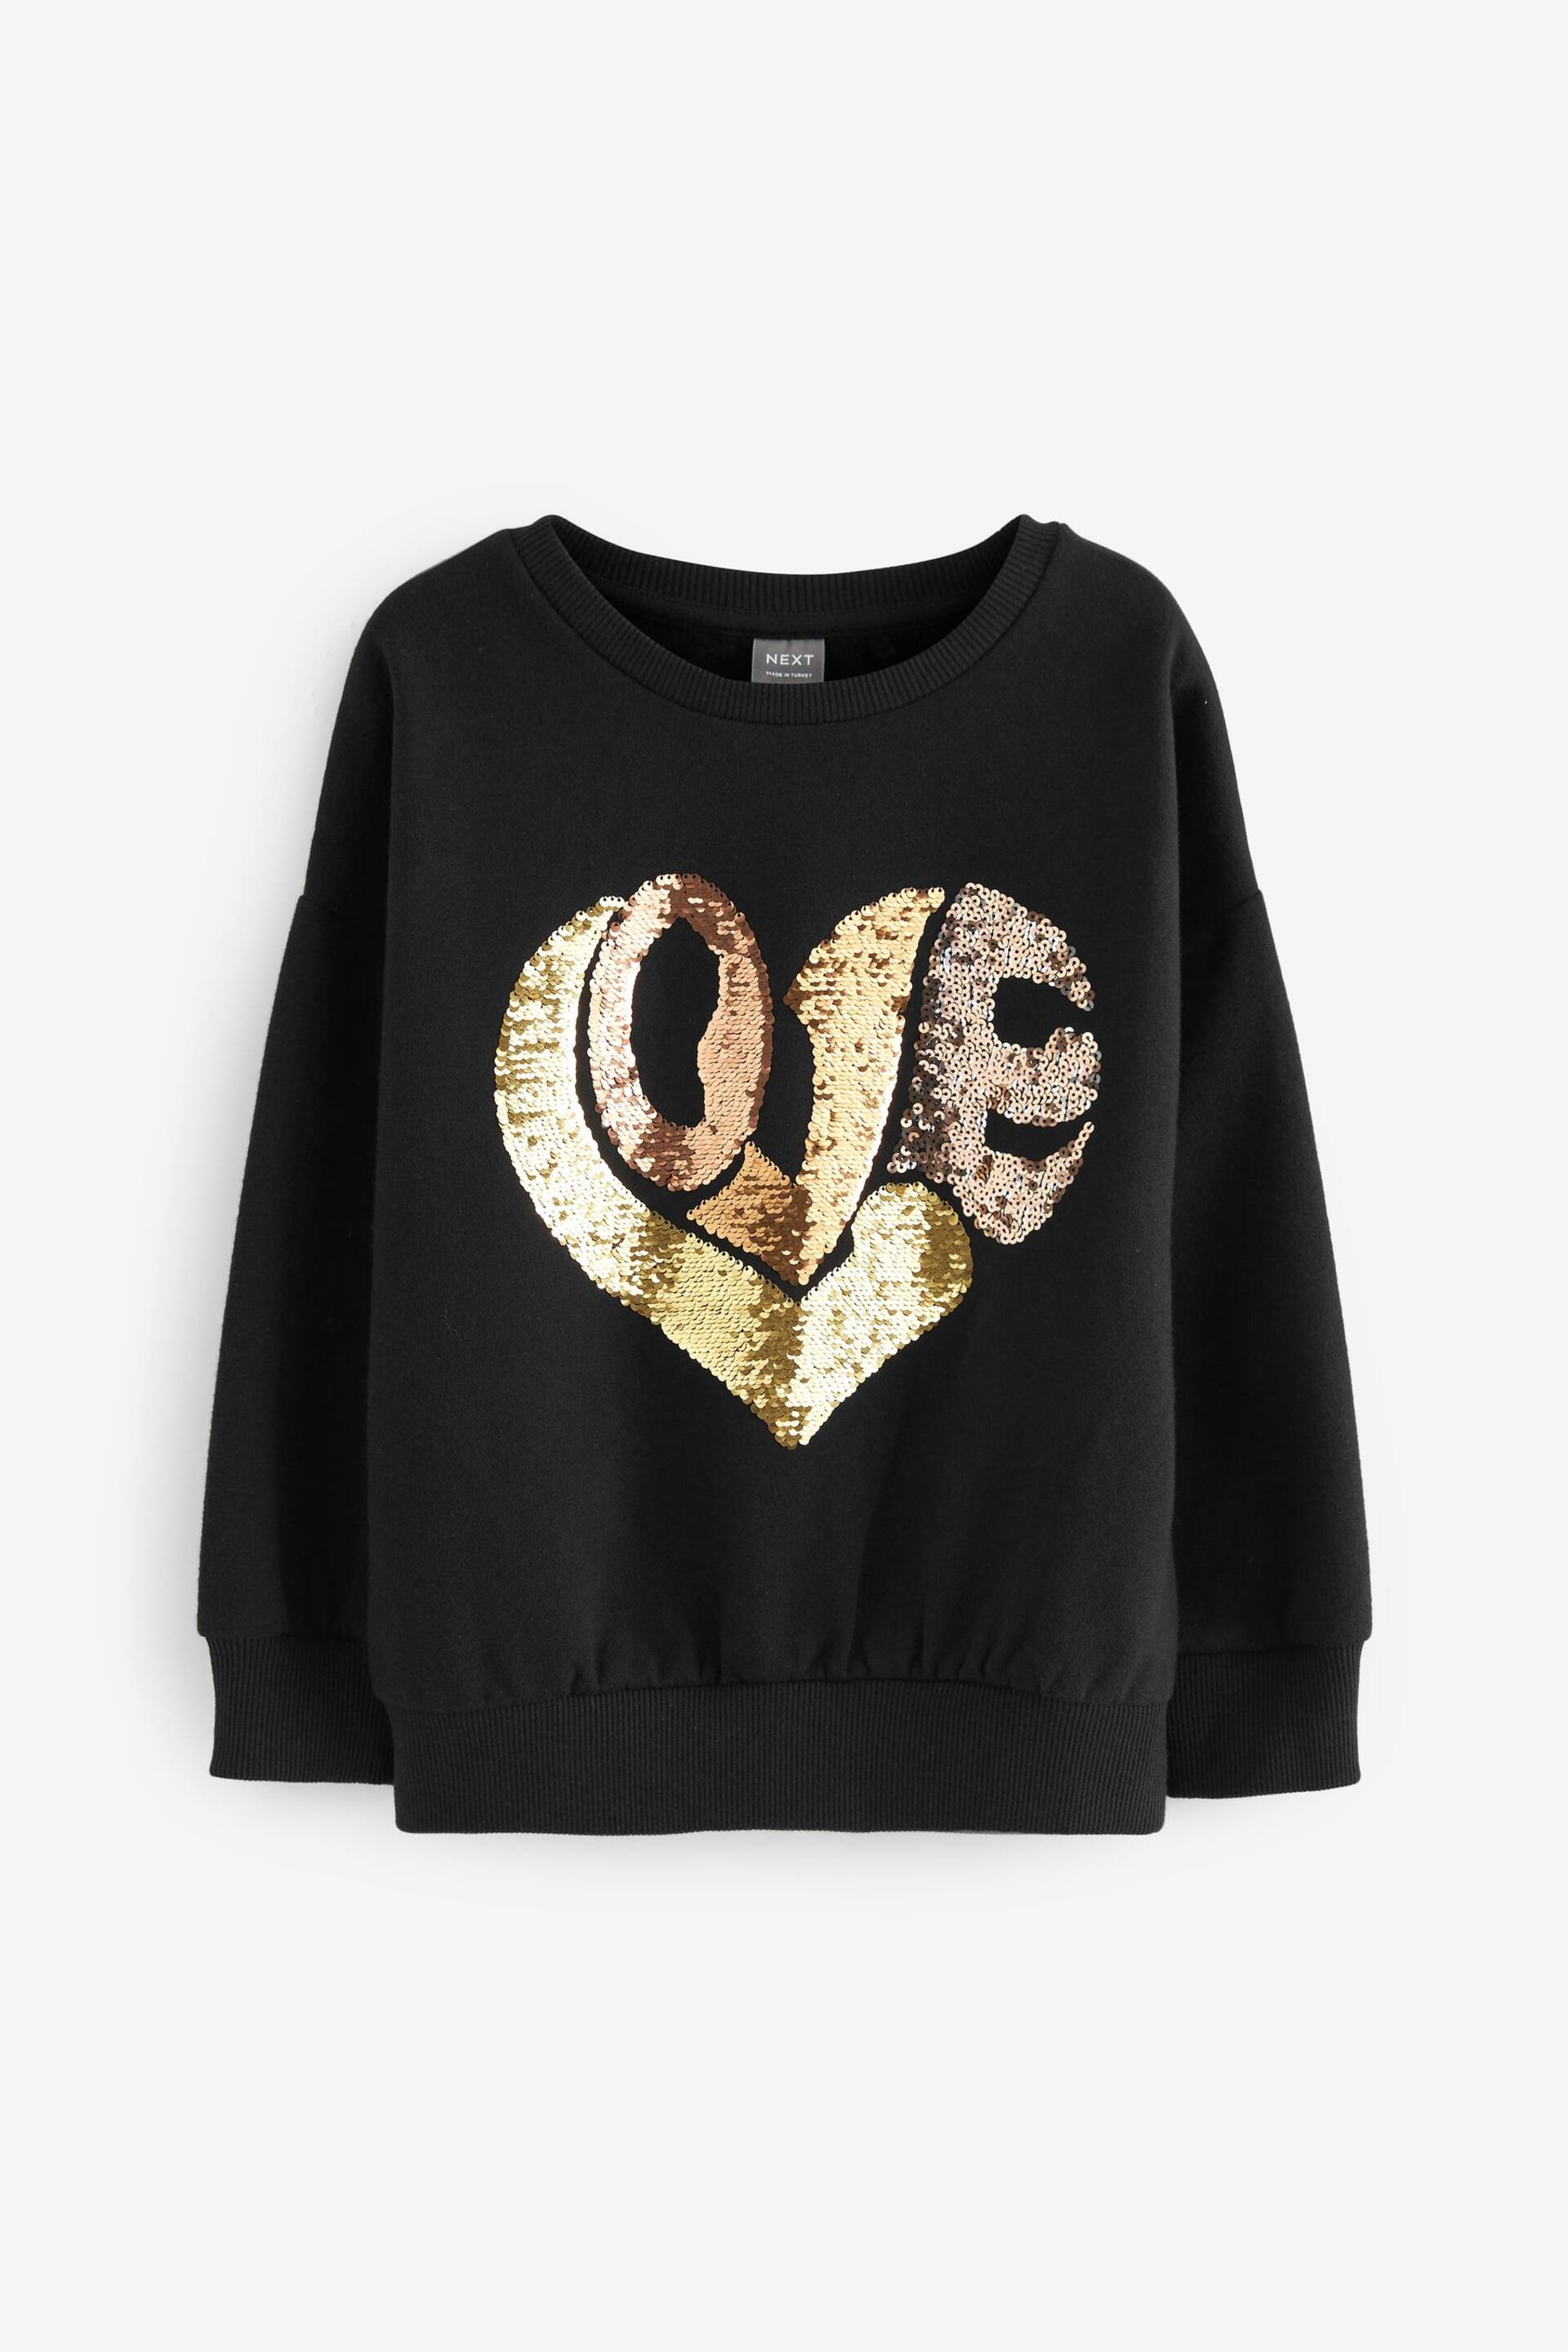 Black/Gold Love Heart Sequin Crew Sweatshirt Top (3-16yrs) - Image 1 of 4